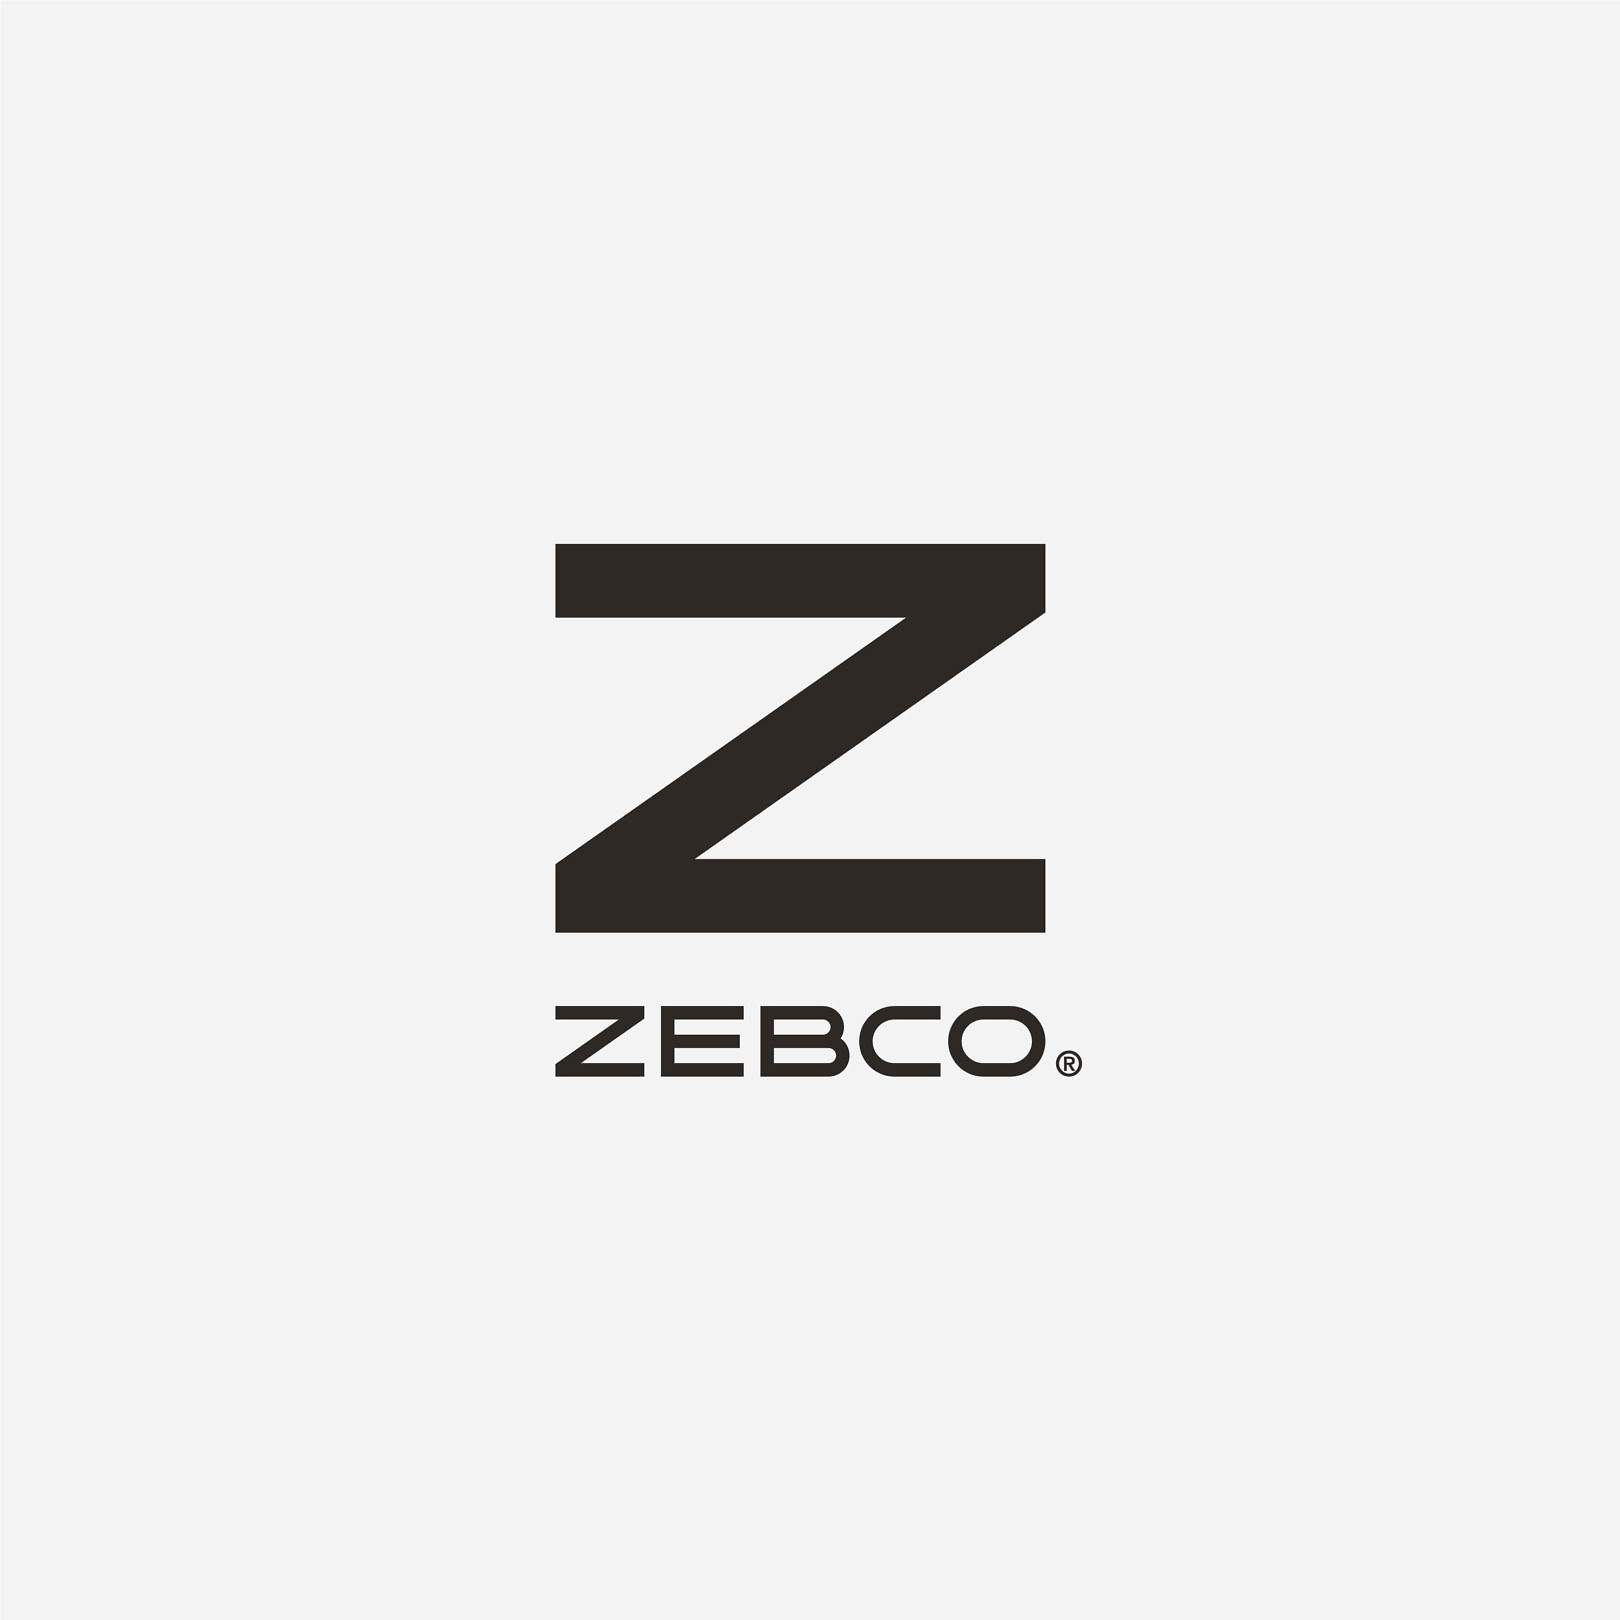 Zebco | Cue